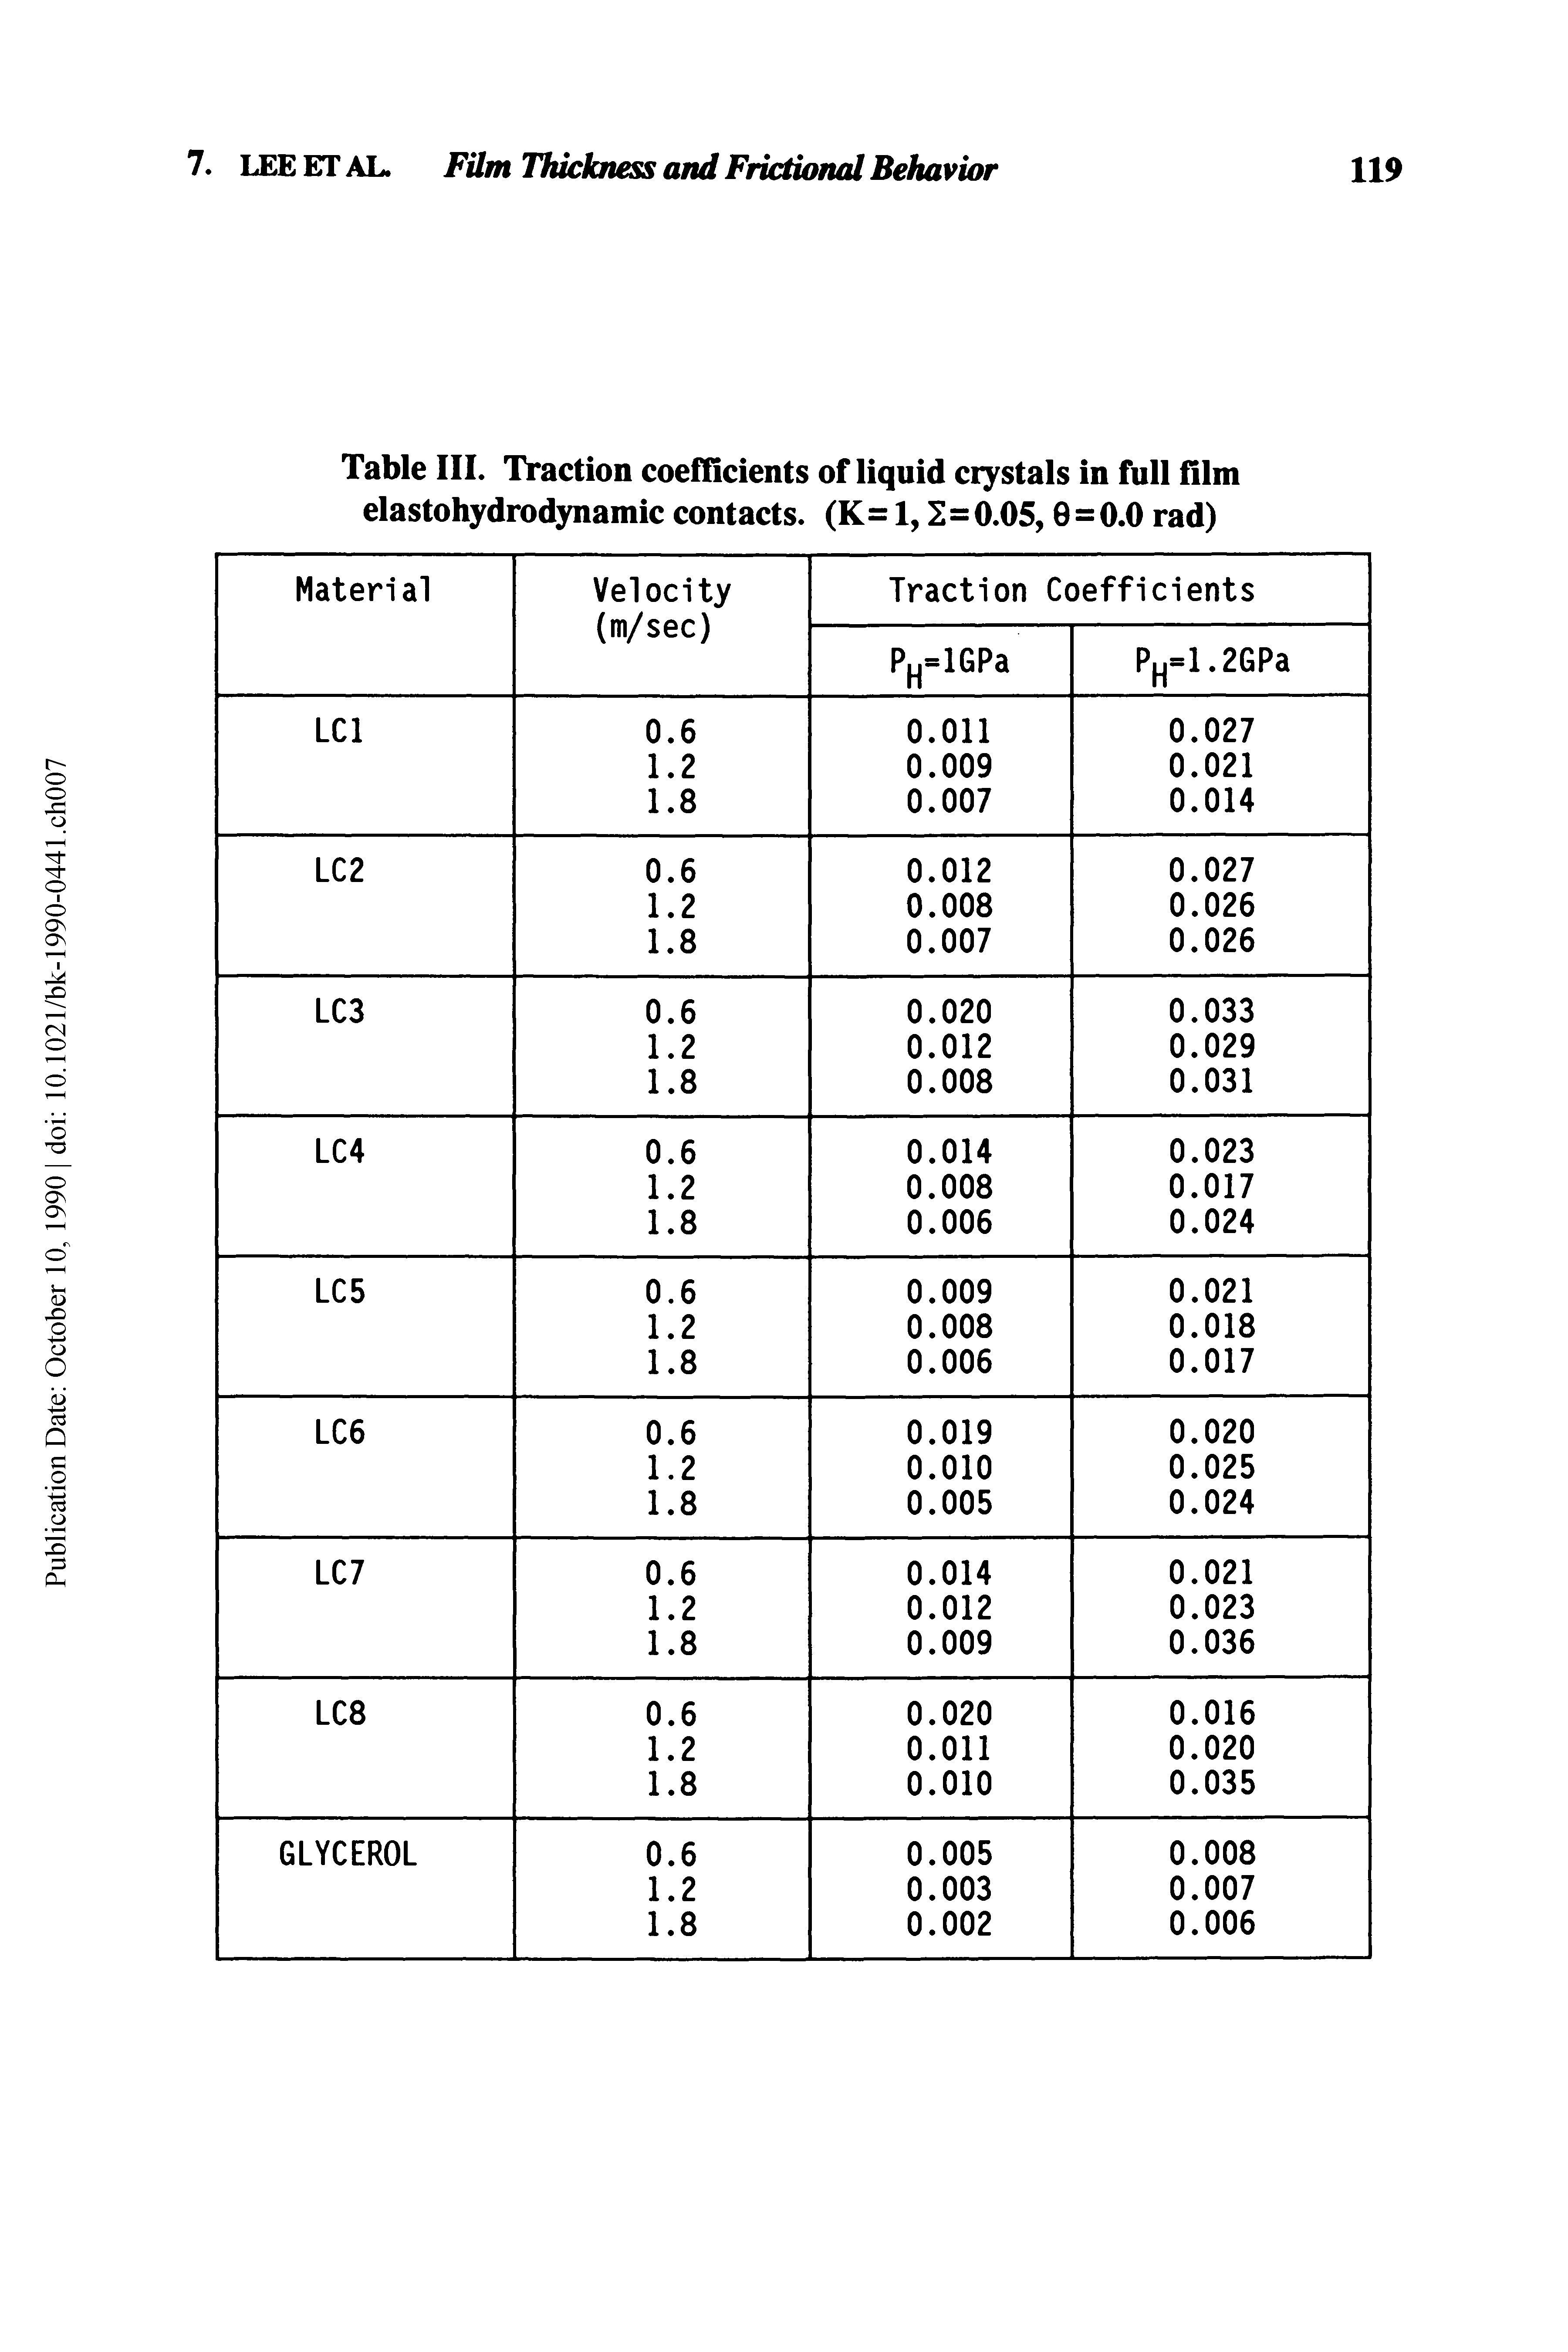 Table III. Traction coeflidents of liquid ciystals in full film elastohydrodynamic contacts. (K = 1,2=0.05,0=0.0 rad)...